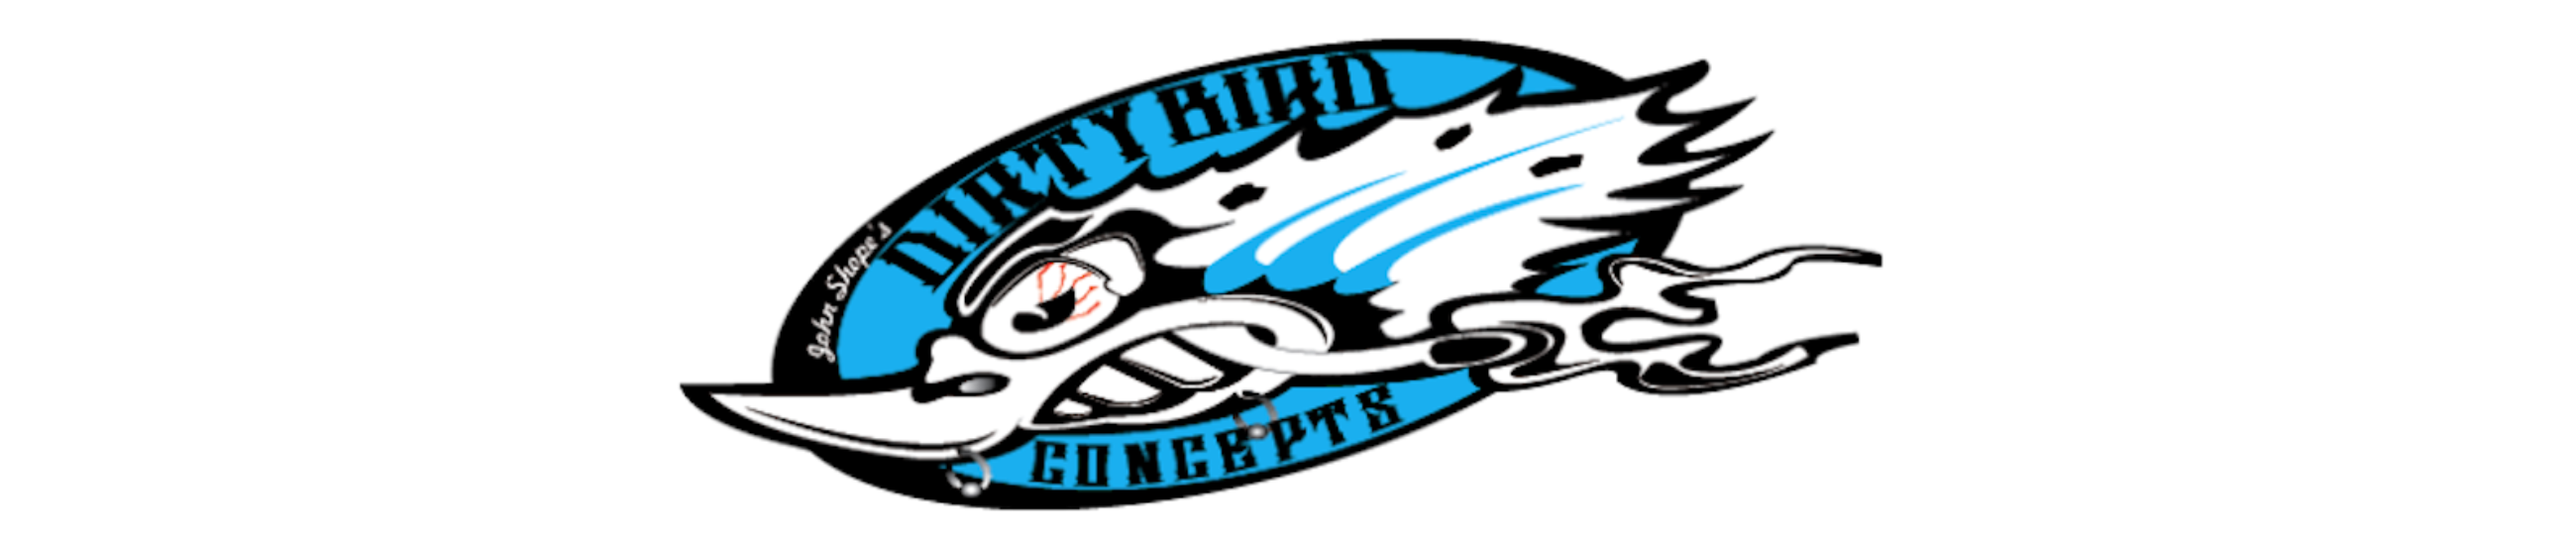 dirty bird concepts logo